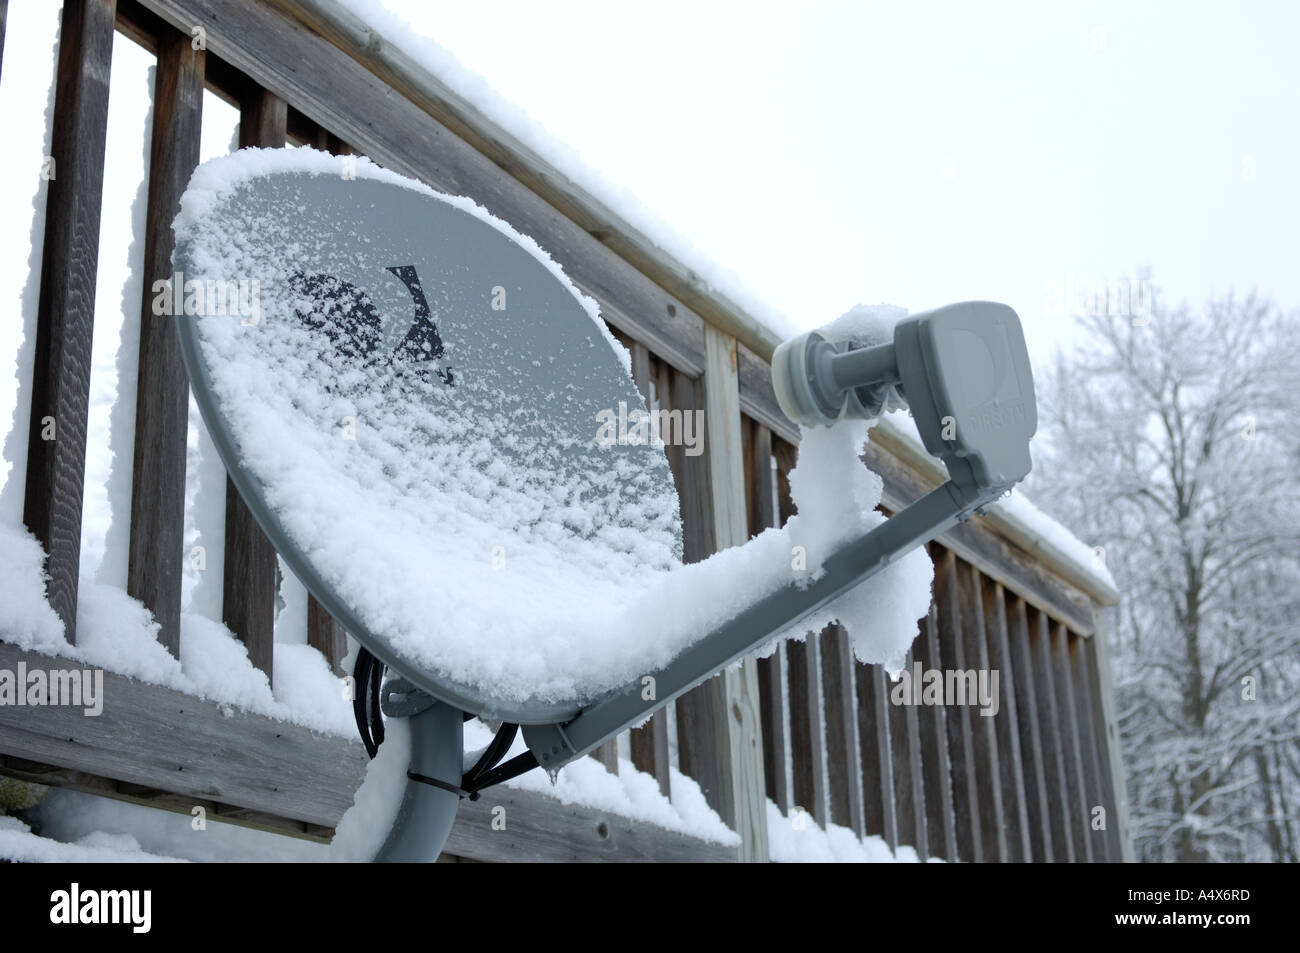 kleiner Fernseher Sat-Antenne mit Schnee bedeckt Stockfotografie - Alamy